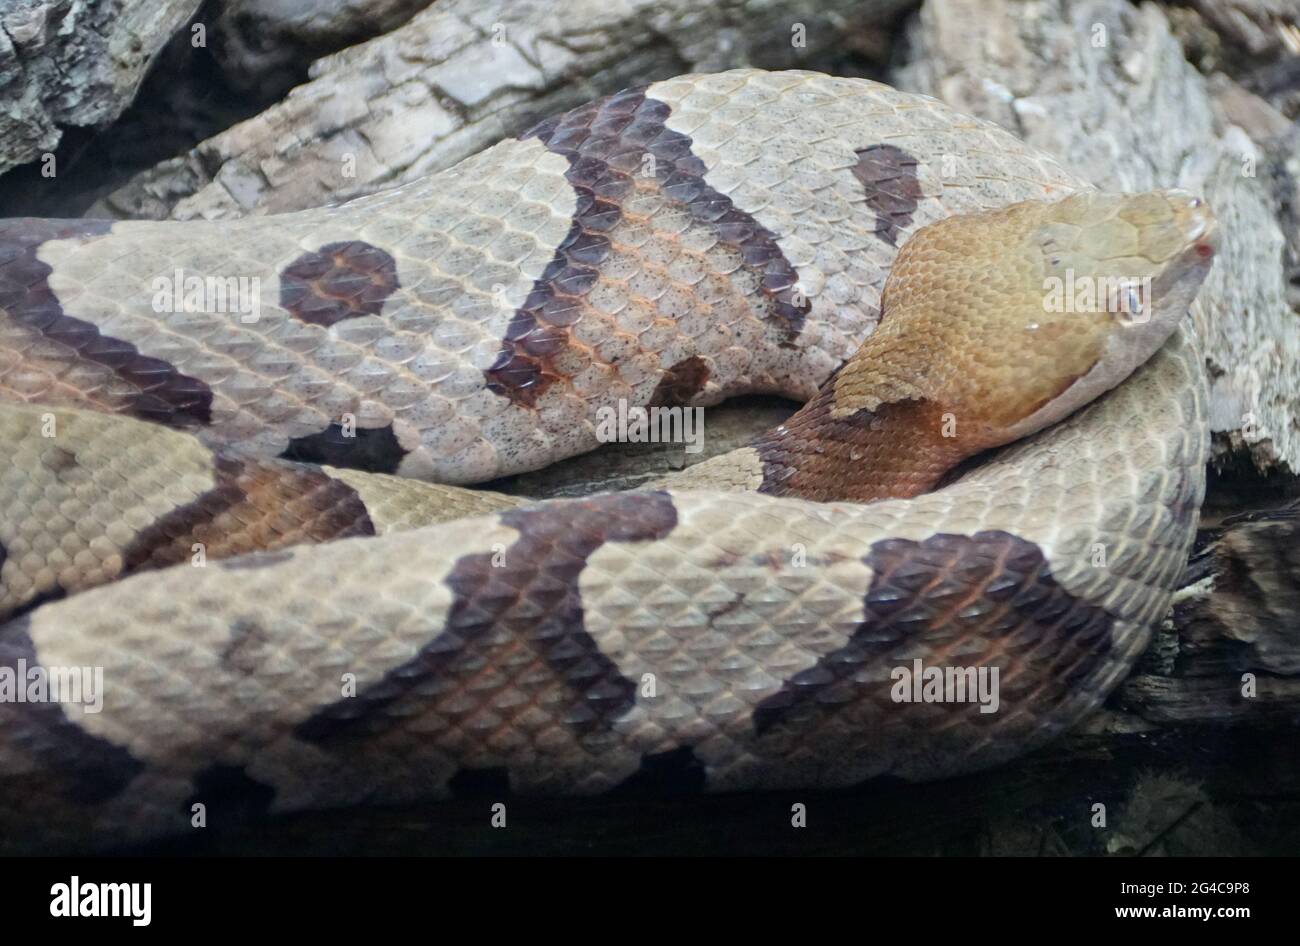 Primer plano de los hermosos patrones de una Copperhead del Norte, una serpiente venenosa de los Estados Unidos de América Central y Oriental Foto de stock